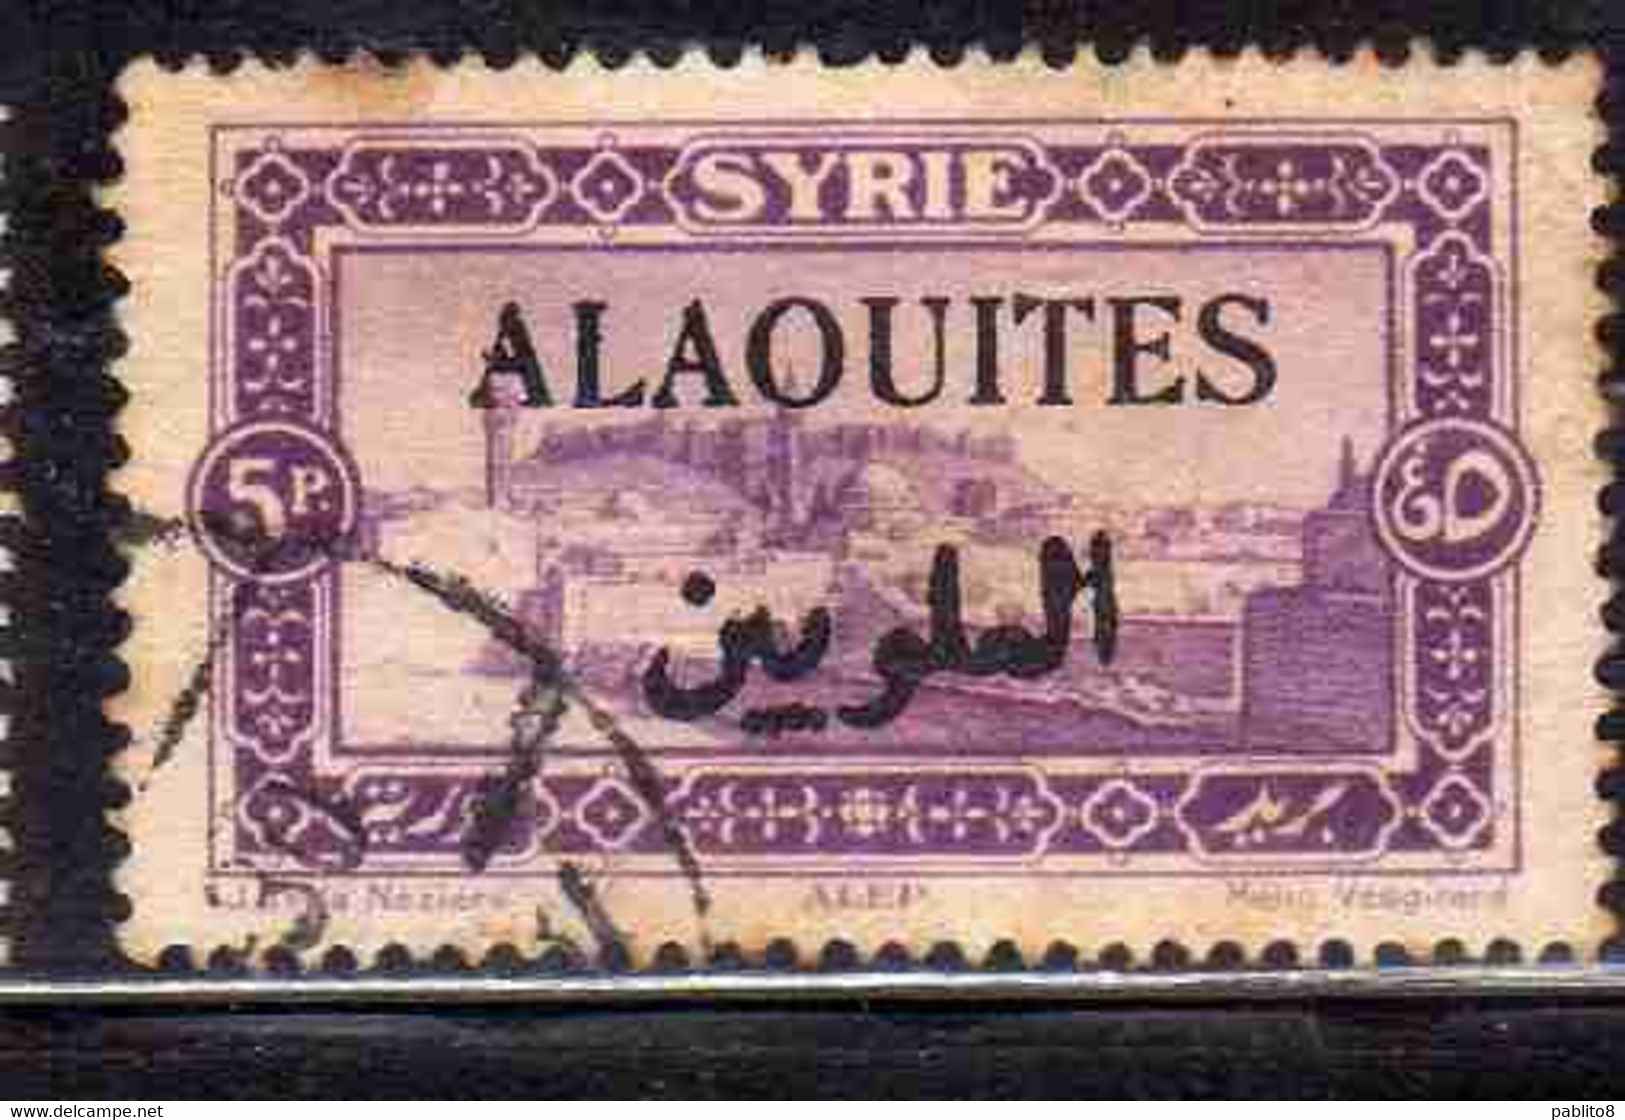 ALAOUITES SYRIA SIRIA ALAQUITES 1925 VIEW OF ALEPPO 5p USED USATO OBLITERE' - Usados